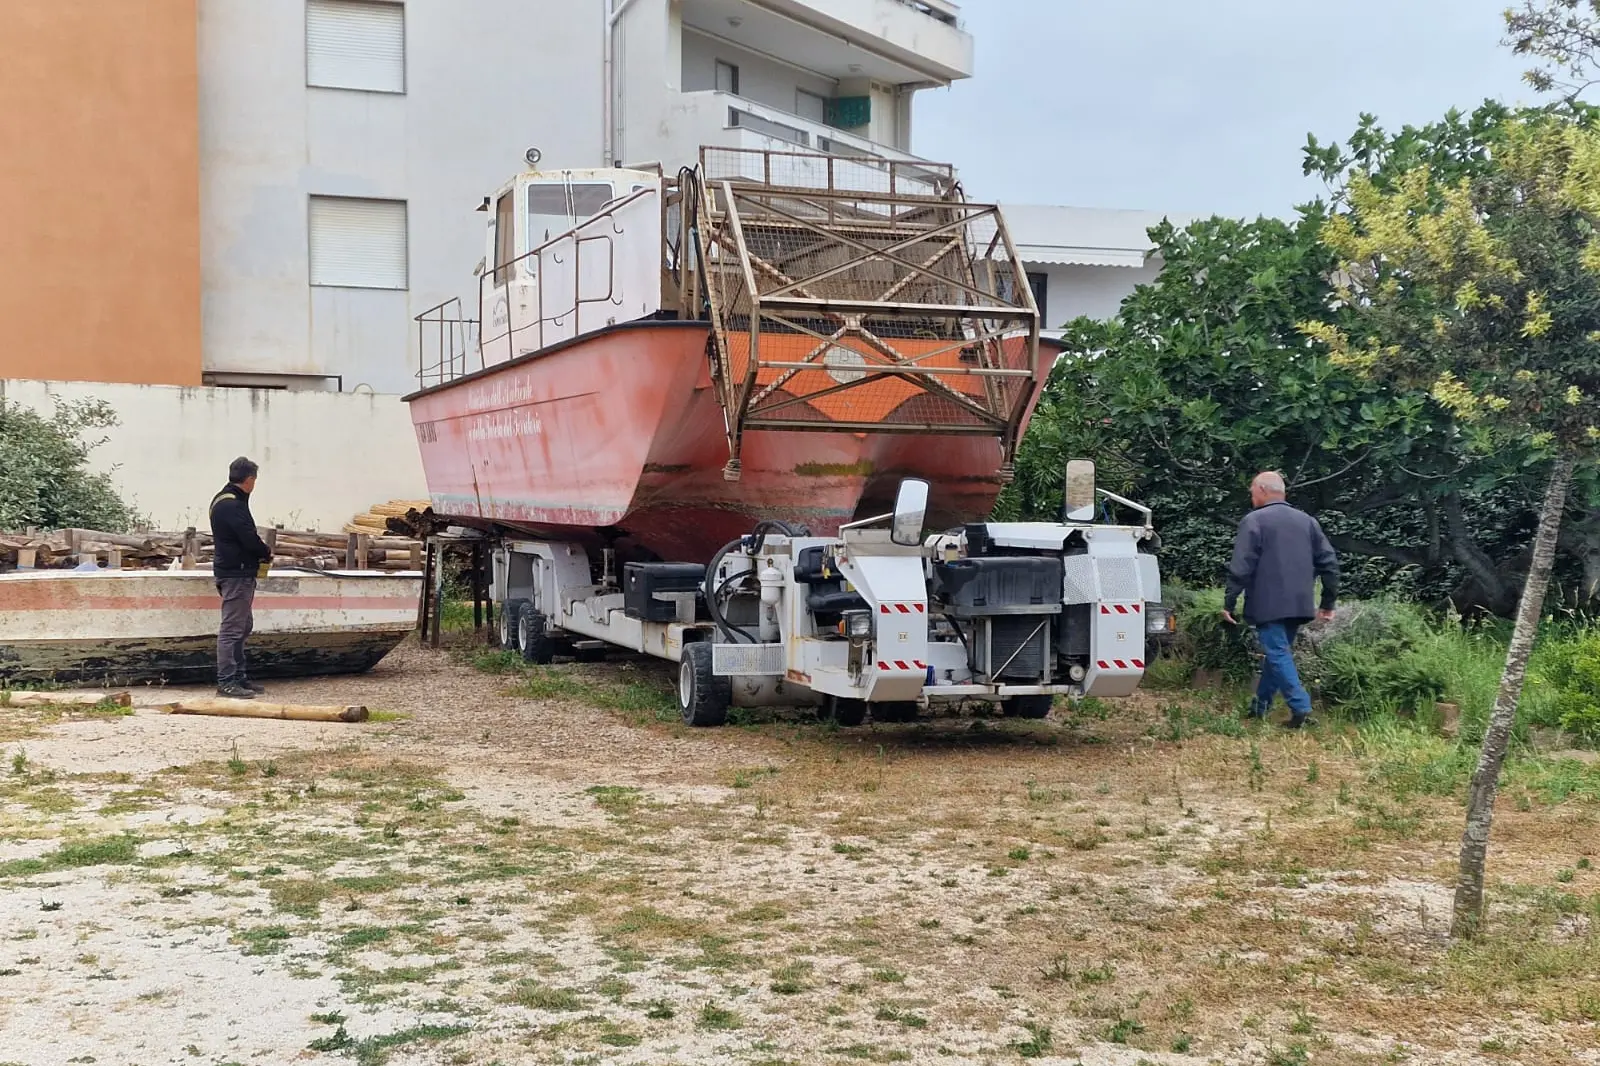 La barca abbandonata (foto Fiori)